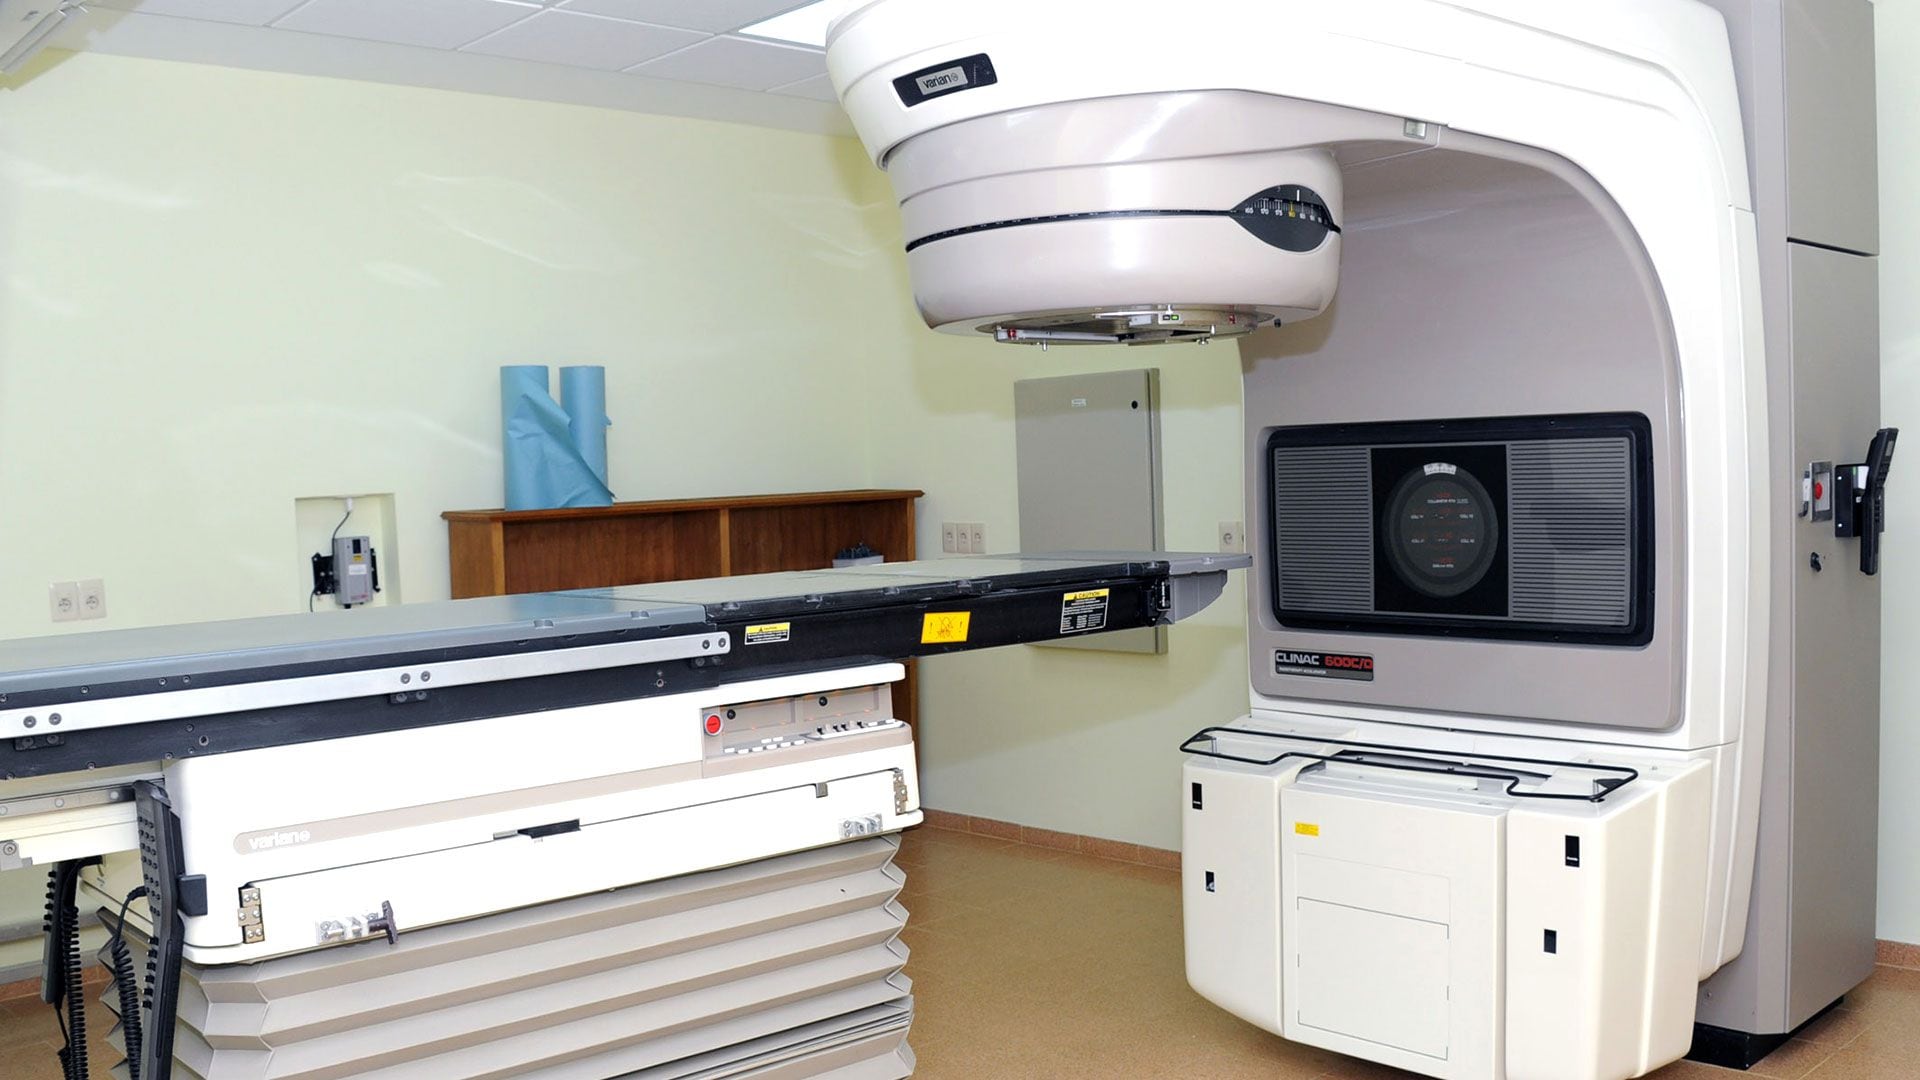 Un acelerador lineal para el tratamiento de radioterapia es un ejemplo de la tecnología desarrollada contra este grupo de enfermedades  (Crédito: Presidencia de Uruguay).